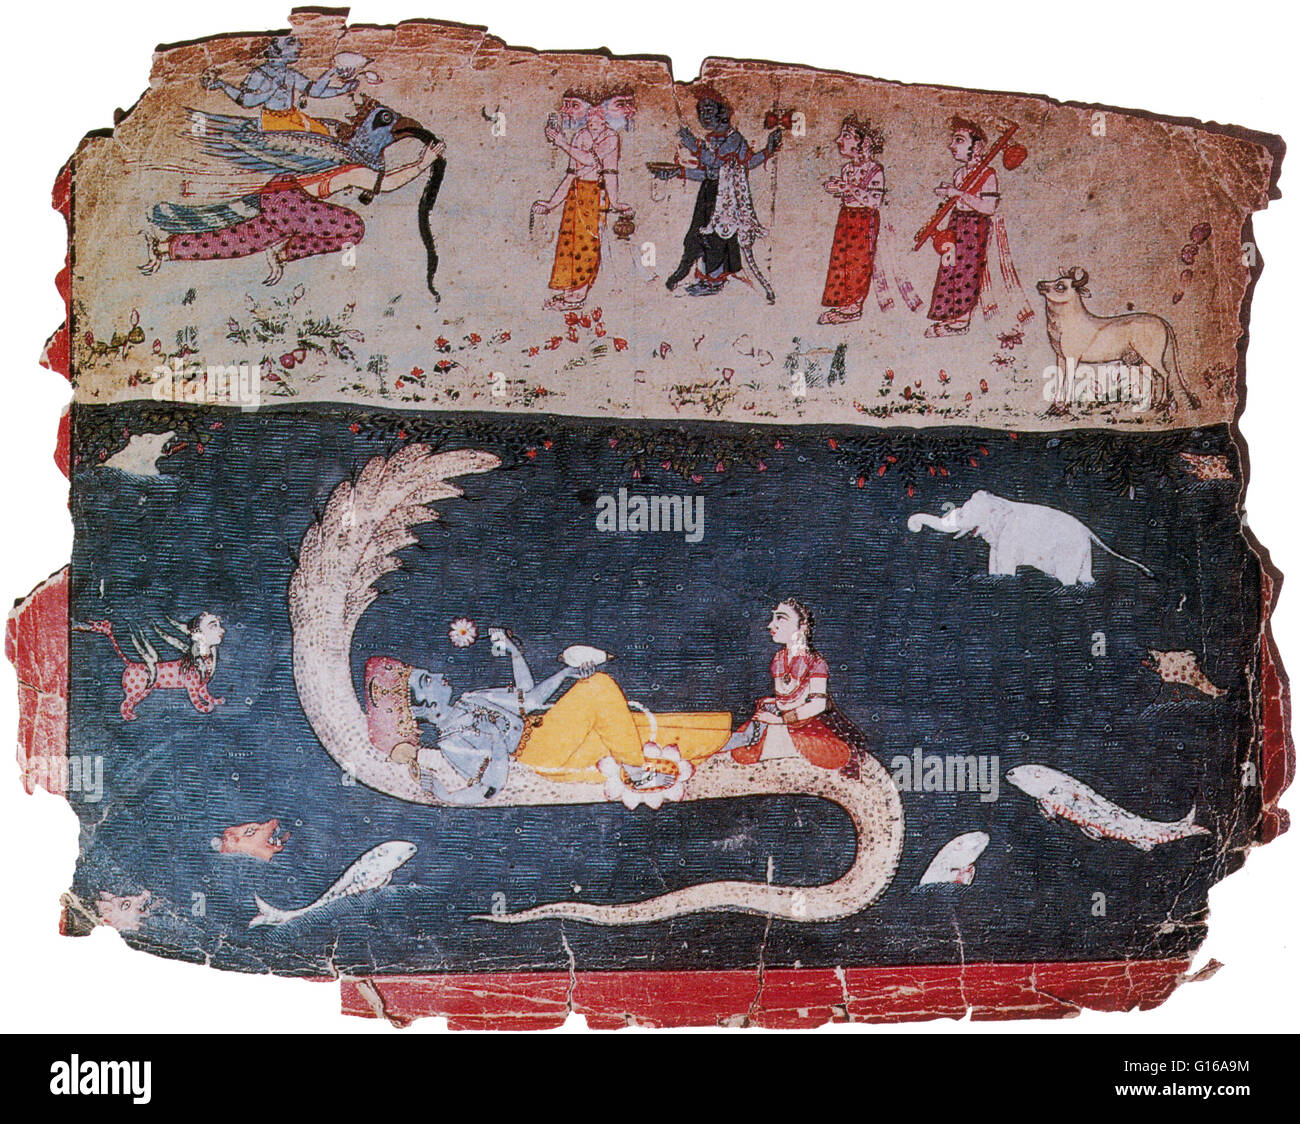 Xvii secolo miniatura di Rajasthan raffiguranti Vishnu e Lakshmi a cavallo sul retro di Ananta tra due periodi di evoluzione cosmica, la distruzione e la creazione. Molte altre divinità del pantheon Hindu sono rappresentati anche i tempi di attesa per la genesi di ne Foto Stock